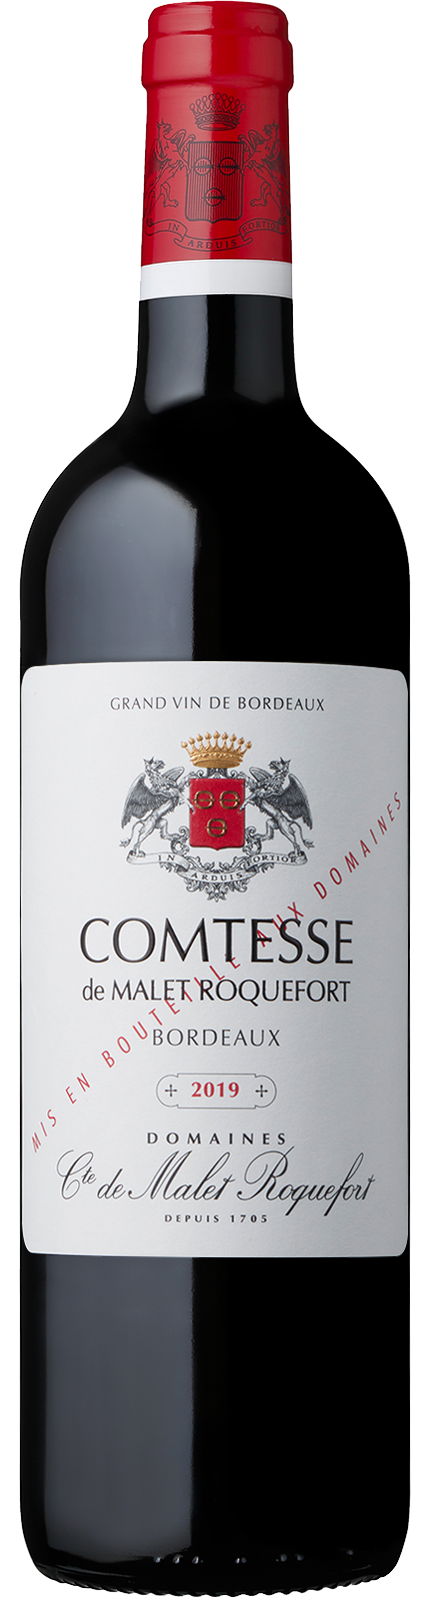 Comtesse de Malet Roquefort - Bordeaux - Vin des Domaines Comte de Malet Roquefort